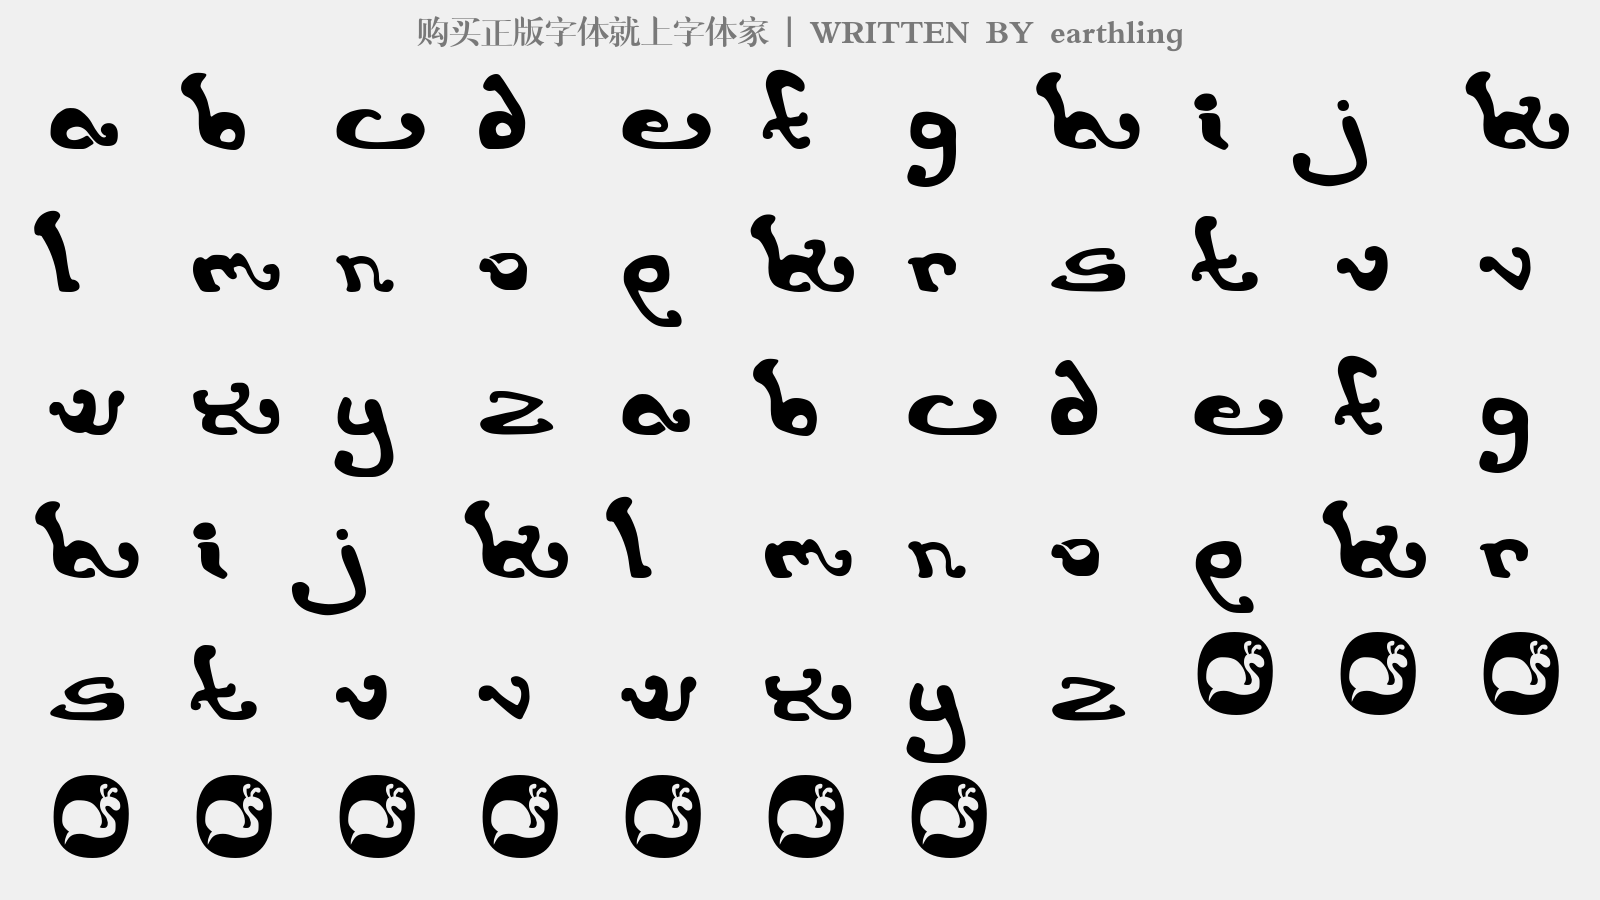 earthling - 大写字母/小写字母/数字